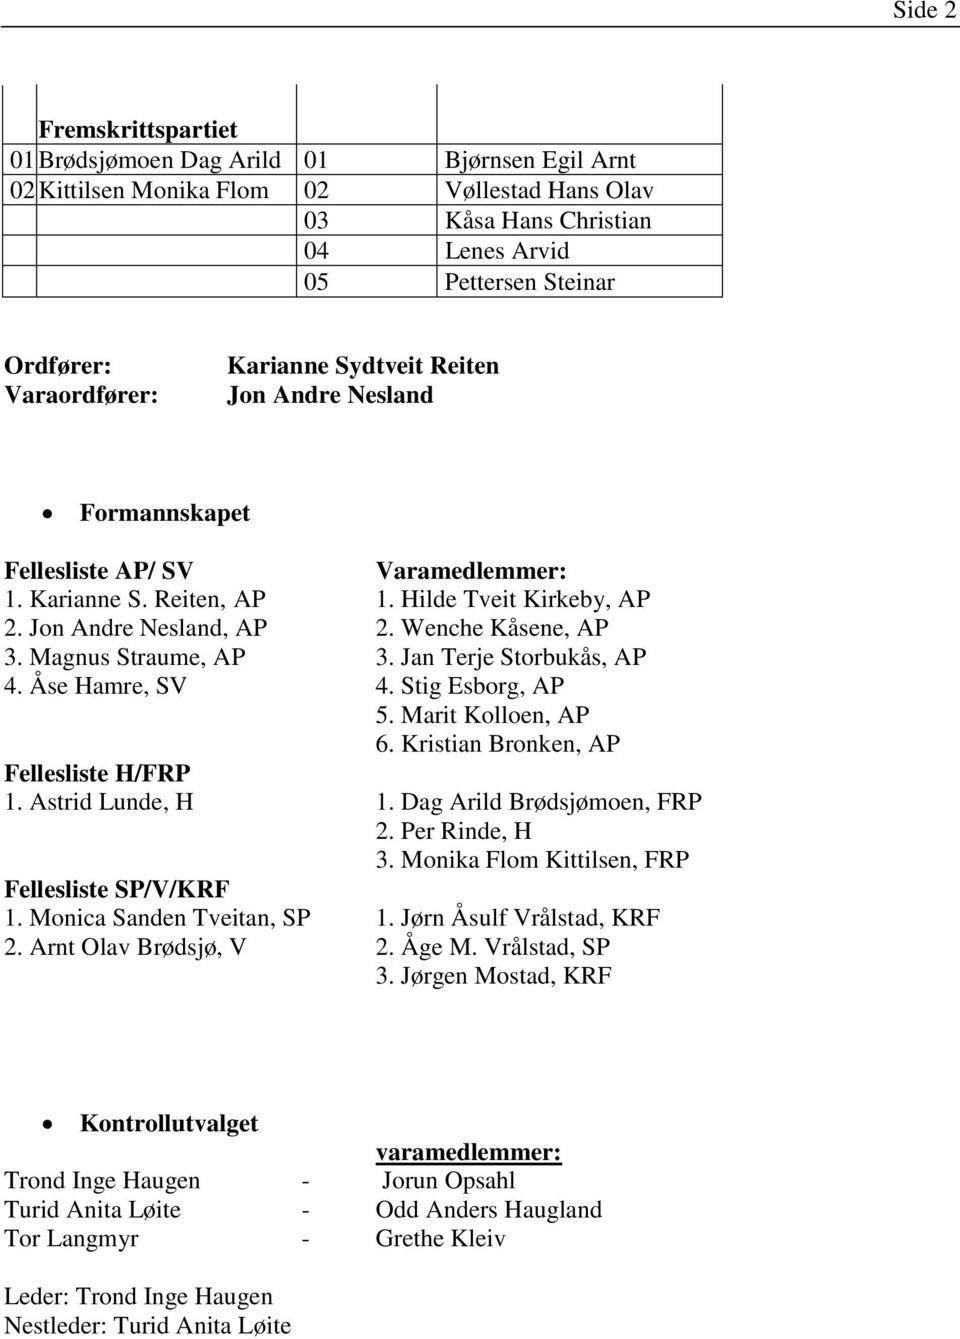 Magnus Straume, AP 3. Jan Terje Storbukås, AP 4. Åse Hamre, SV 4. Stig Esborg, AP 5. Marit Kolloen, AP 6. Kristian Bronken, AP Fellesliste H/FRP 1. Astrid Lunde, H 1. Dag Arild Brødsjømoen, FRP 2.